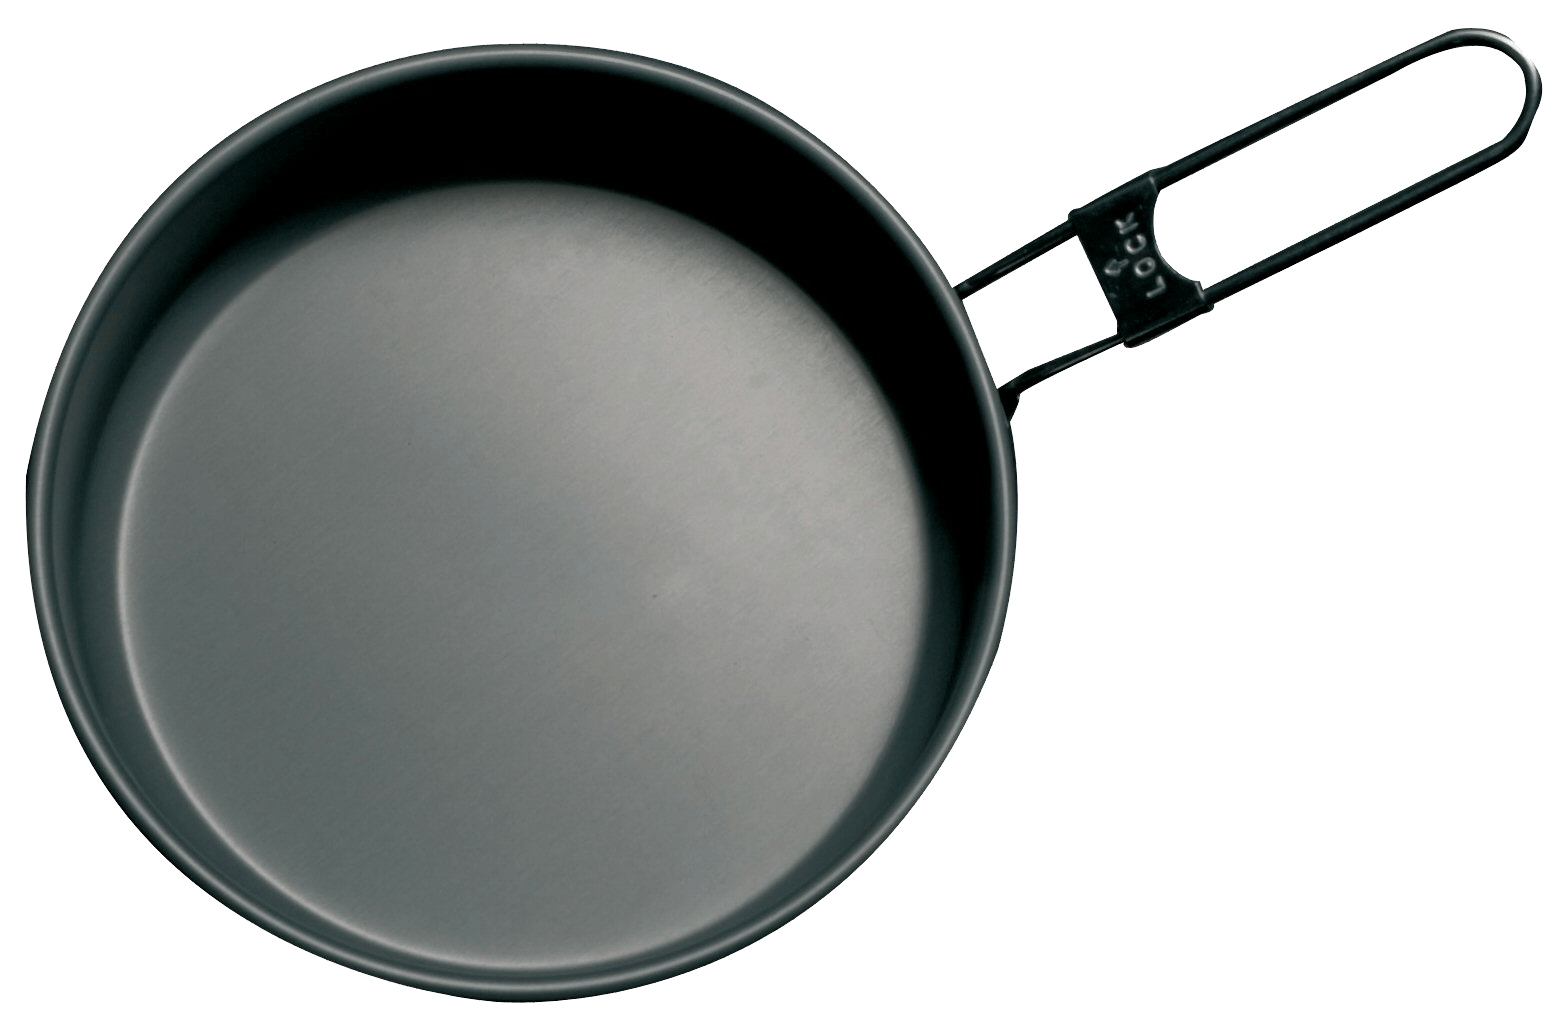 Frying Pan PNG Transparent Im